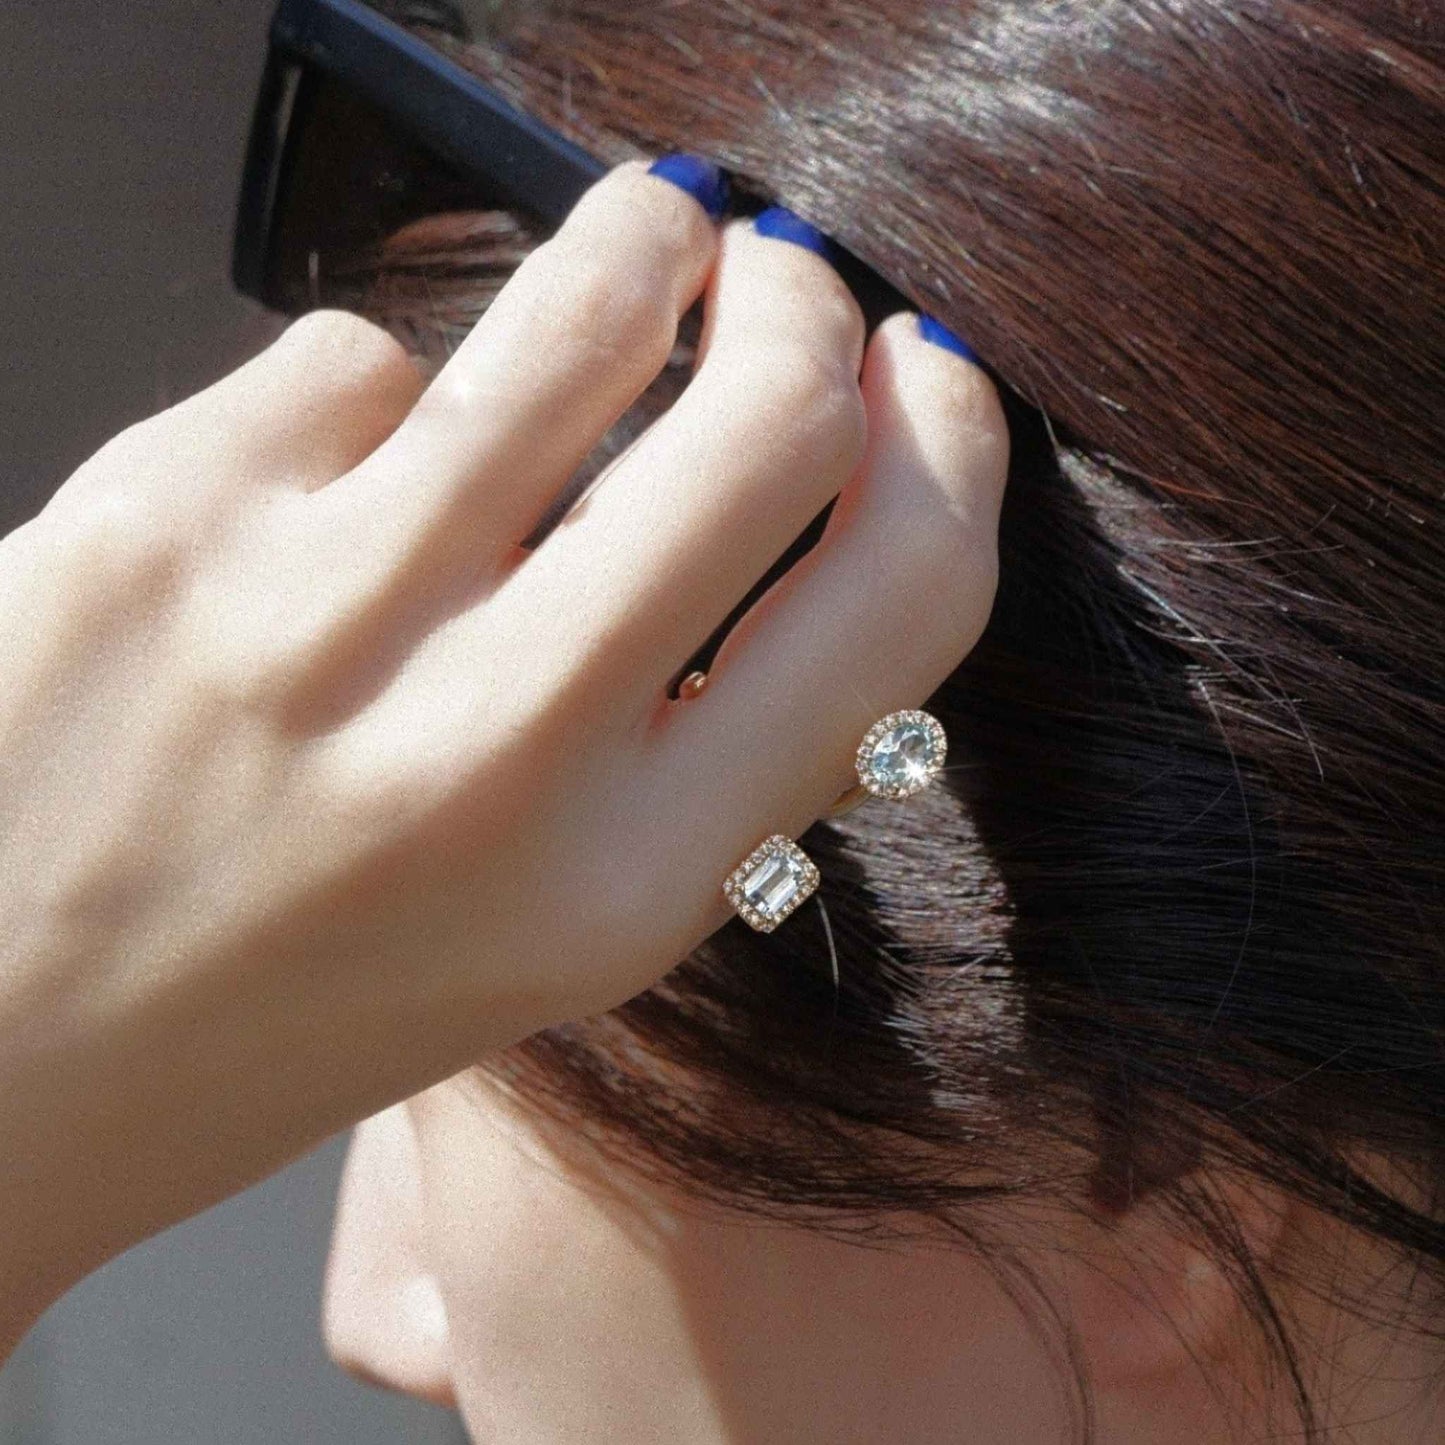 new basic collection / aquamarine diamond double halo ring K18YG